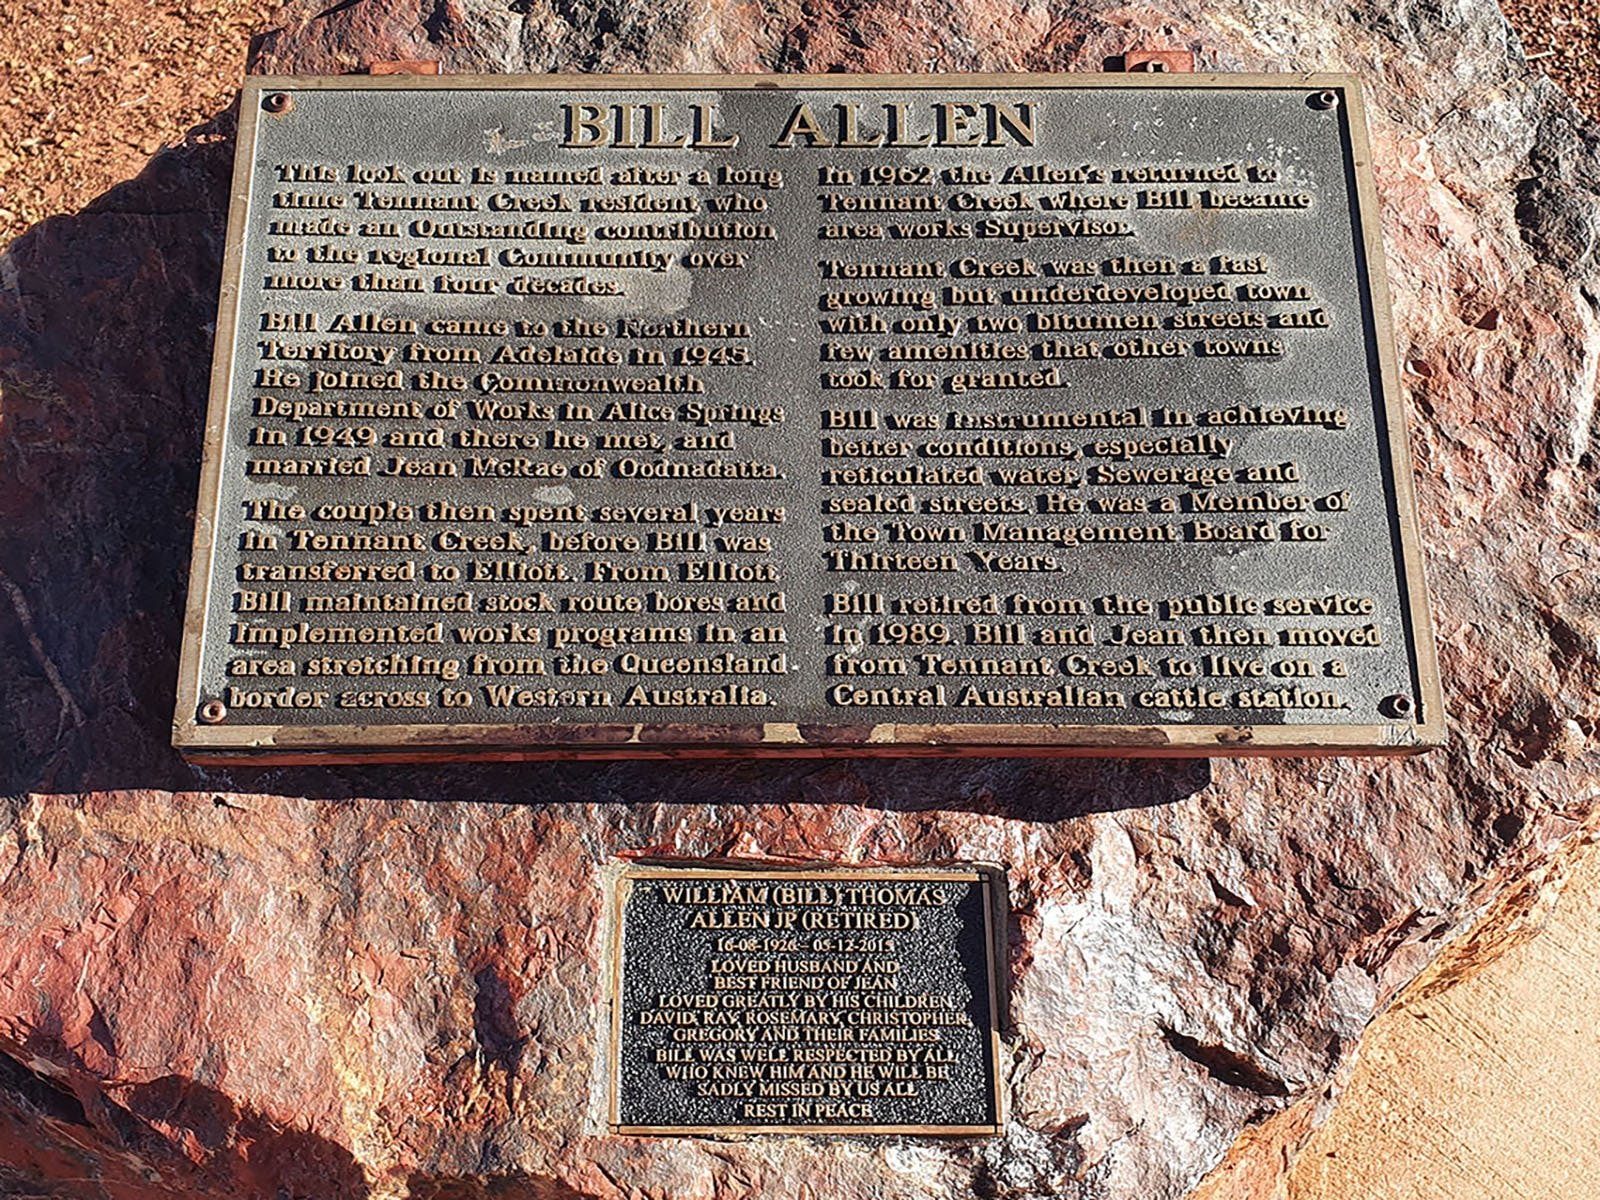 Plaque on a rock describing Bill Allen